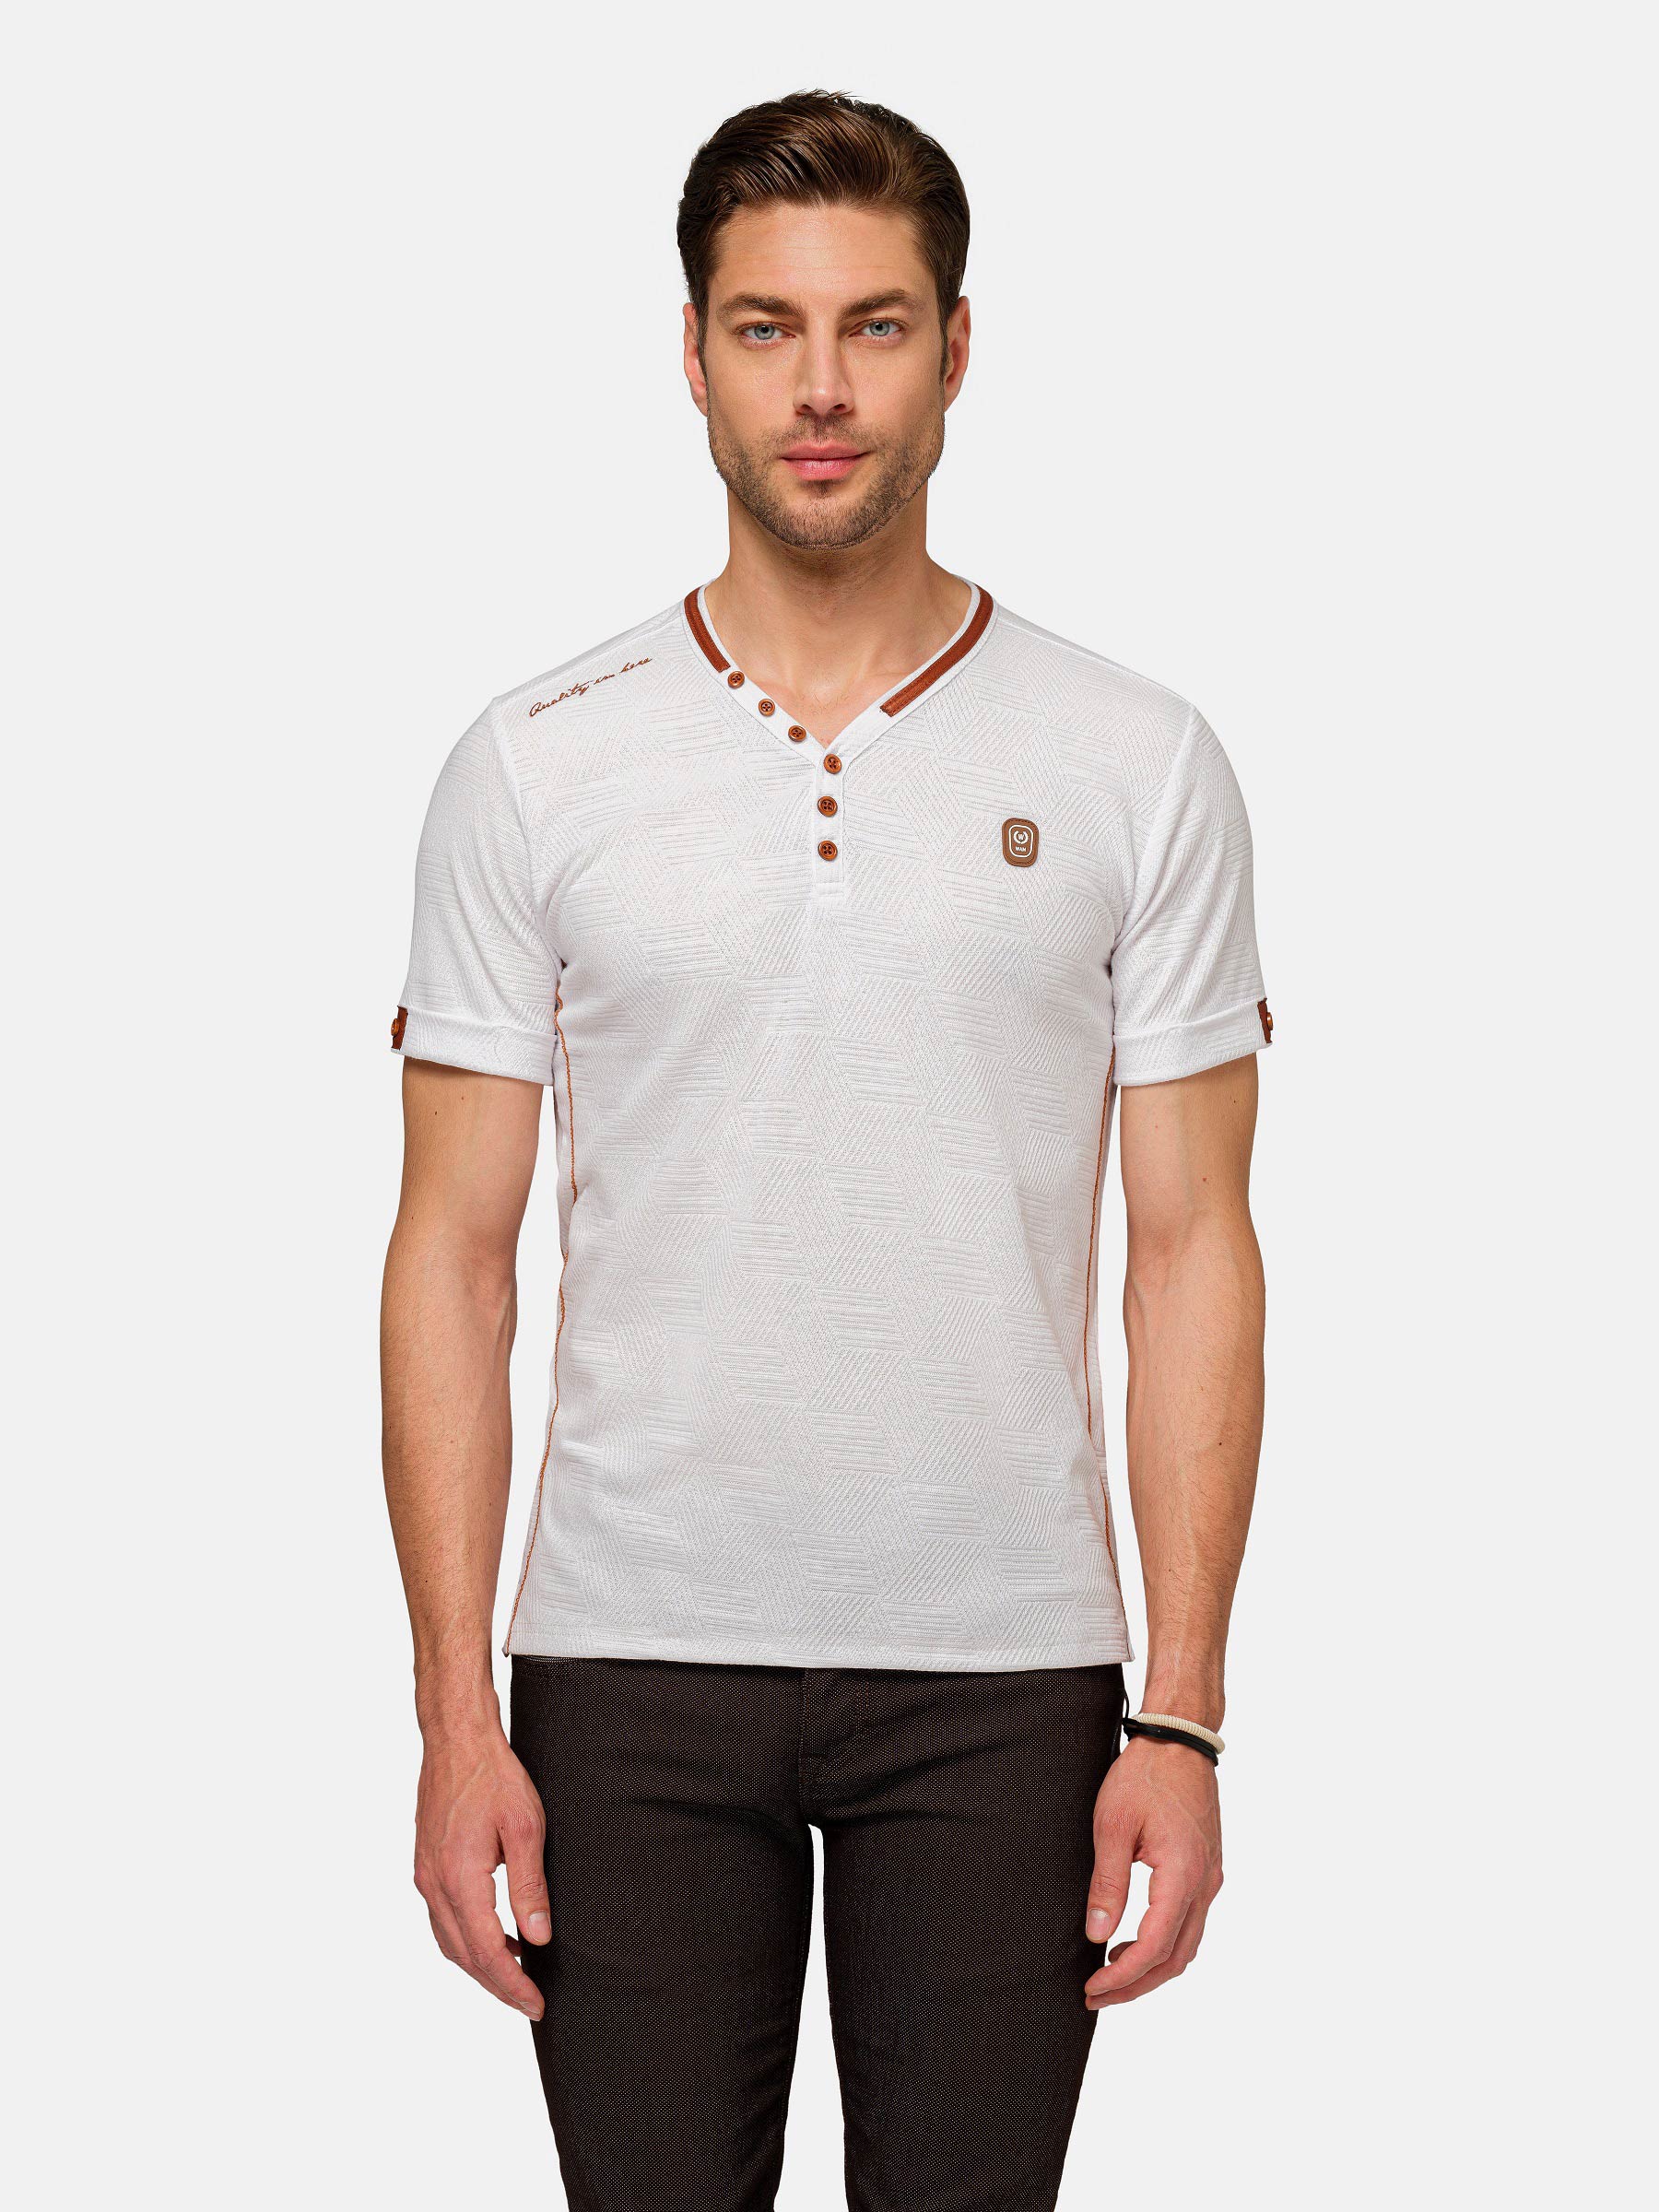 WAM Denim Textured Design Wahar V-neck White T-Shirt-